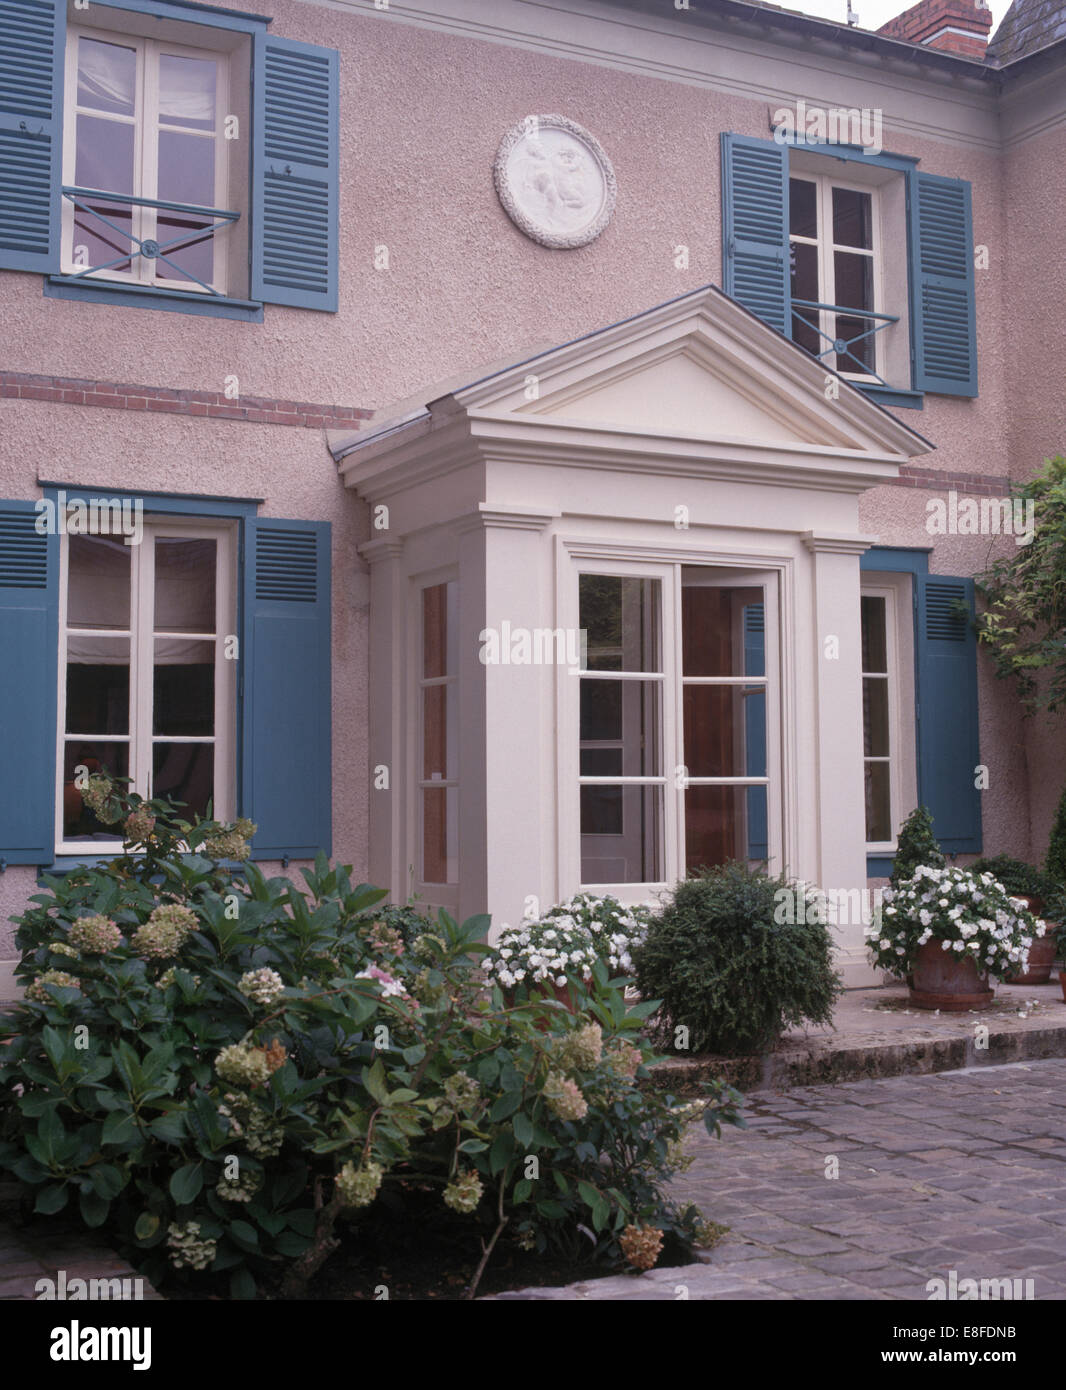 Impatiens bianco in vasi su entrambi i lati del portico di casa cittadina francese con persiane blu Foto Stock